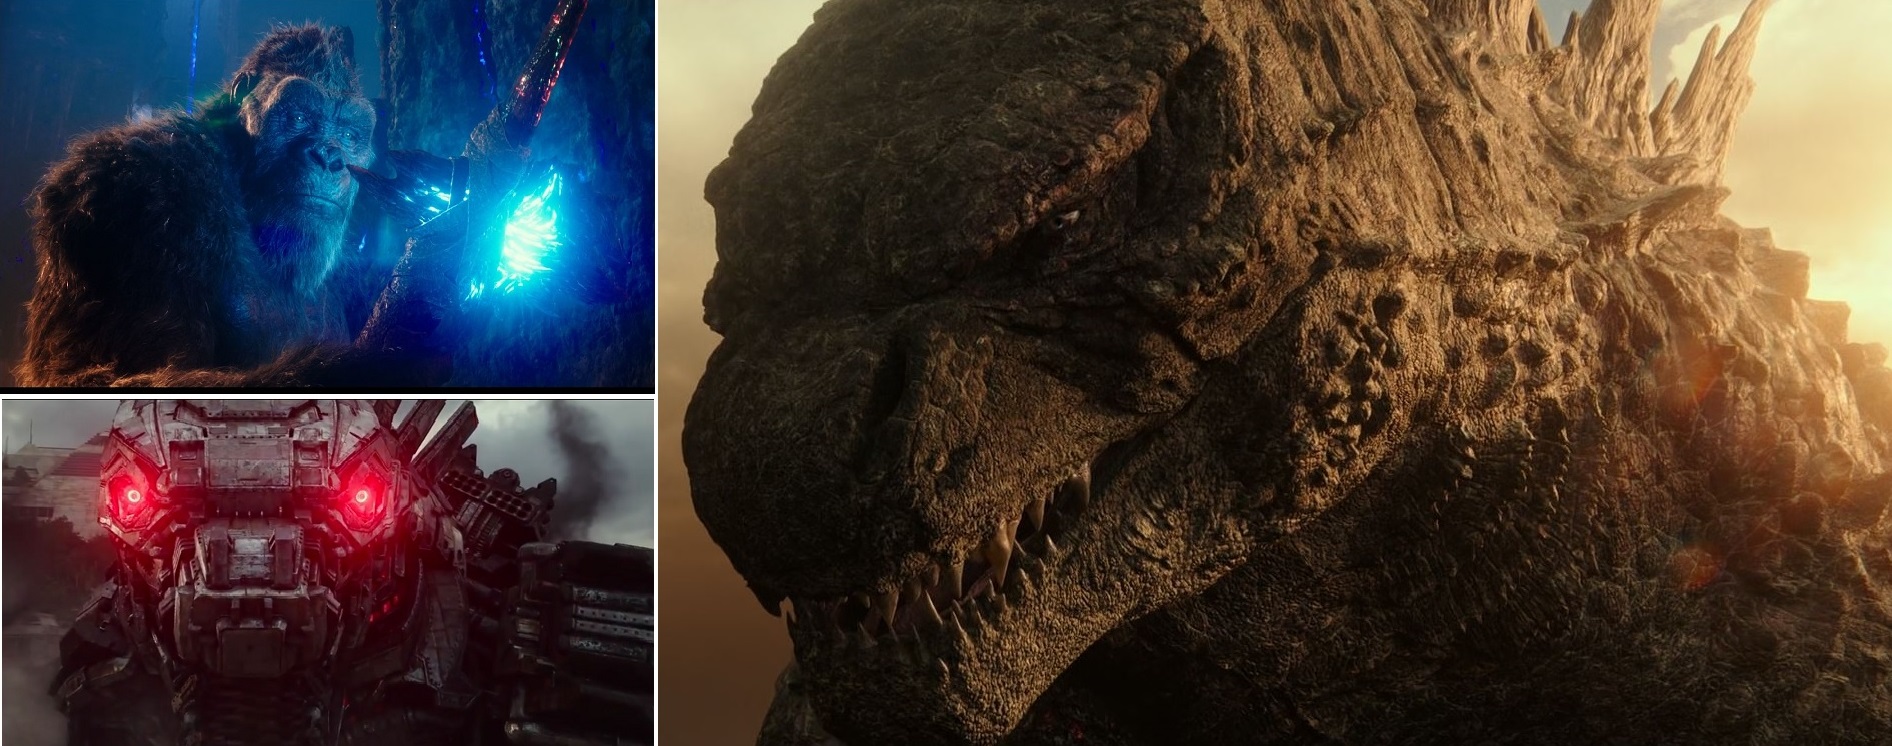 Godzilla Vs Kong 21 Recap And Review Buddy2blogger